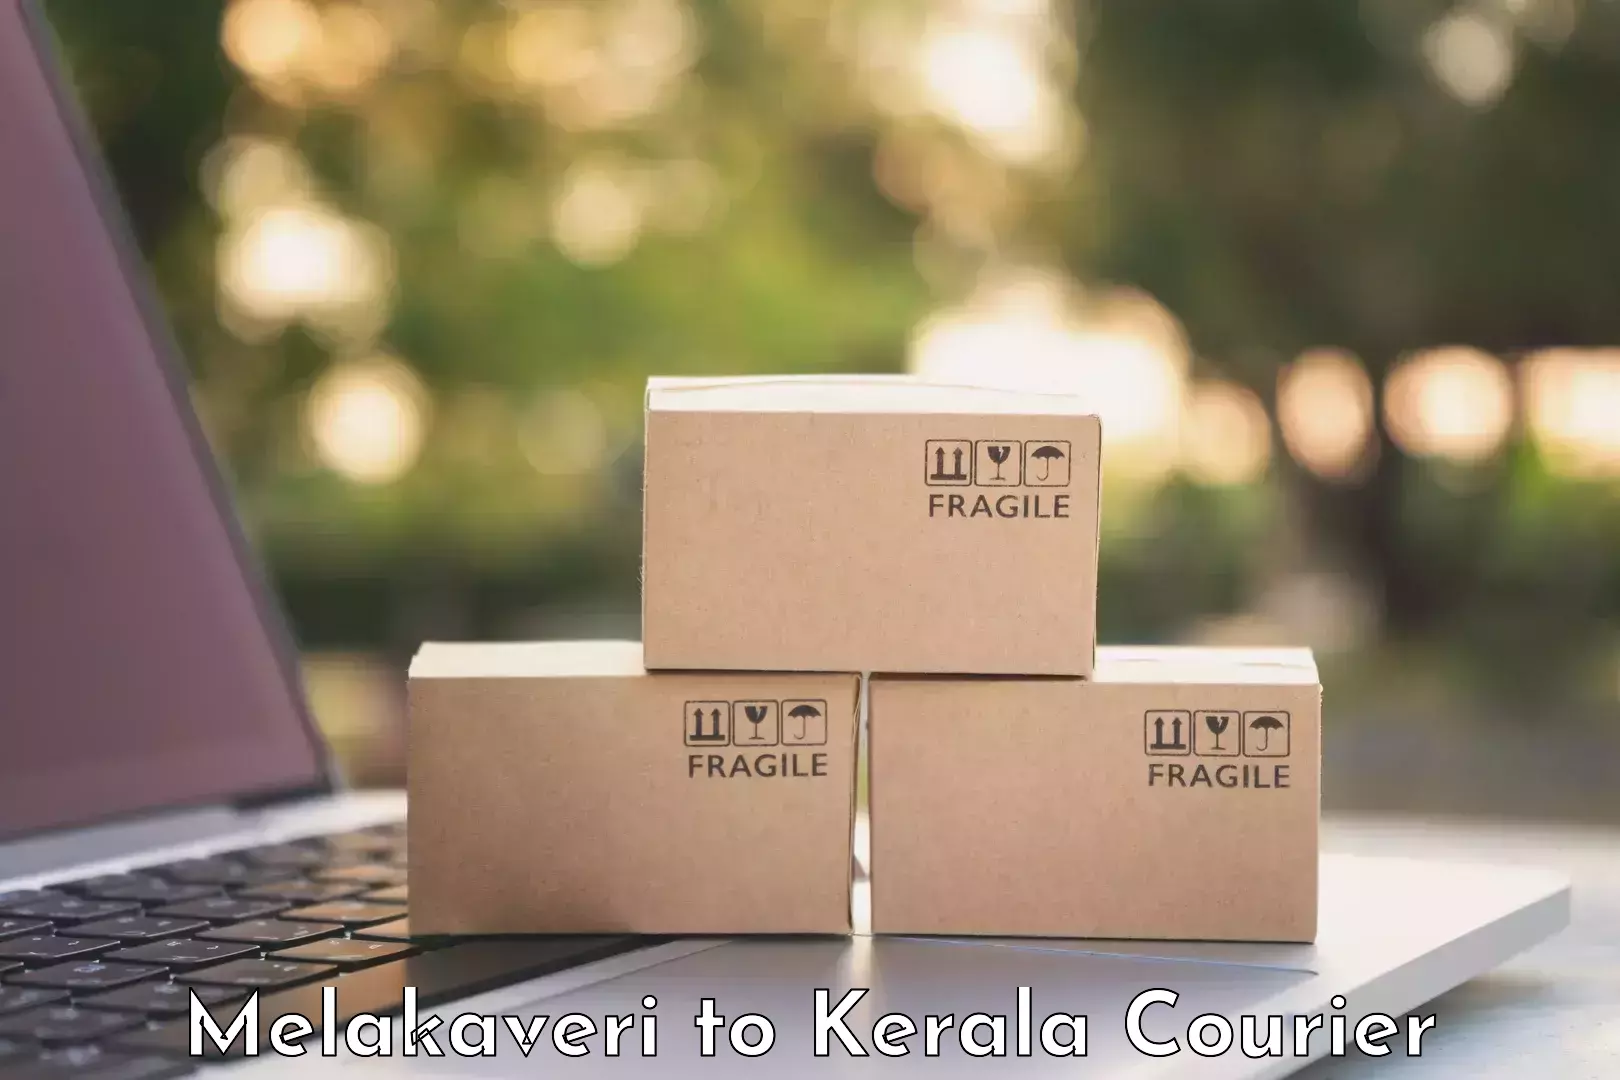 Luggage transport rates calculator Melakaveri to Kerala